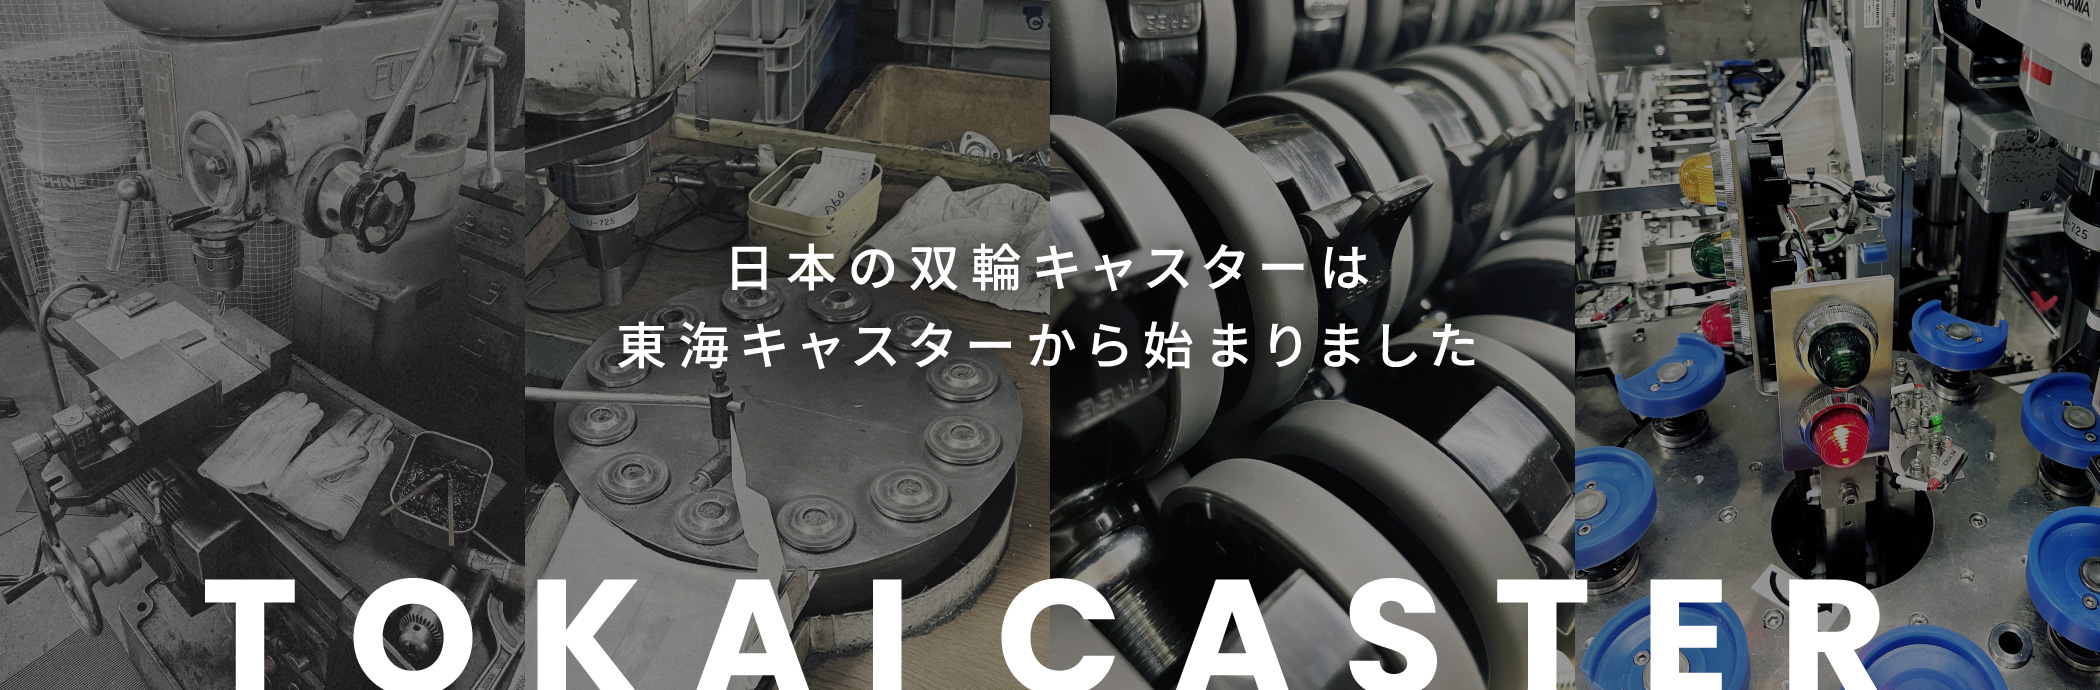 日本の双輪キャスターは東海キャスターから始まりました　キャスターの提案を通して最高の製品開発をお手伝いします